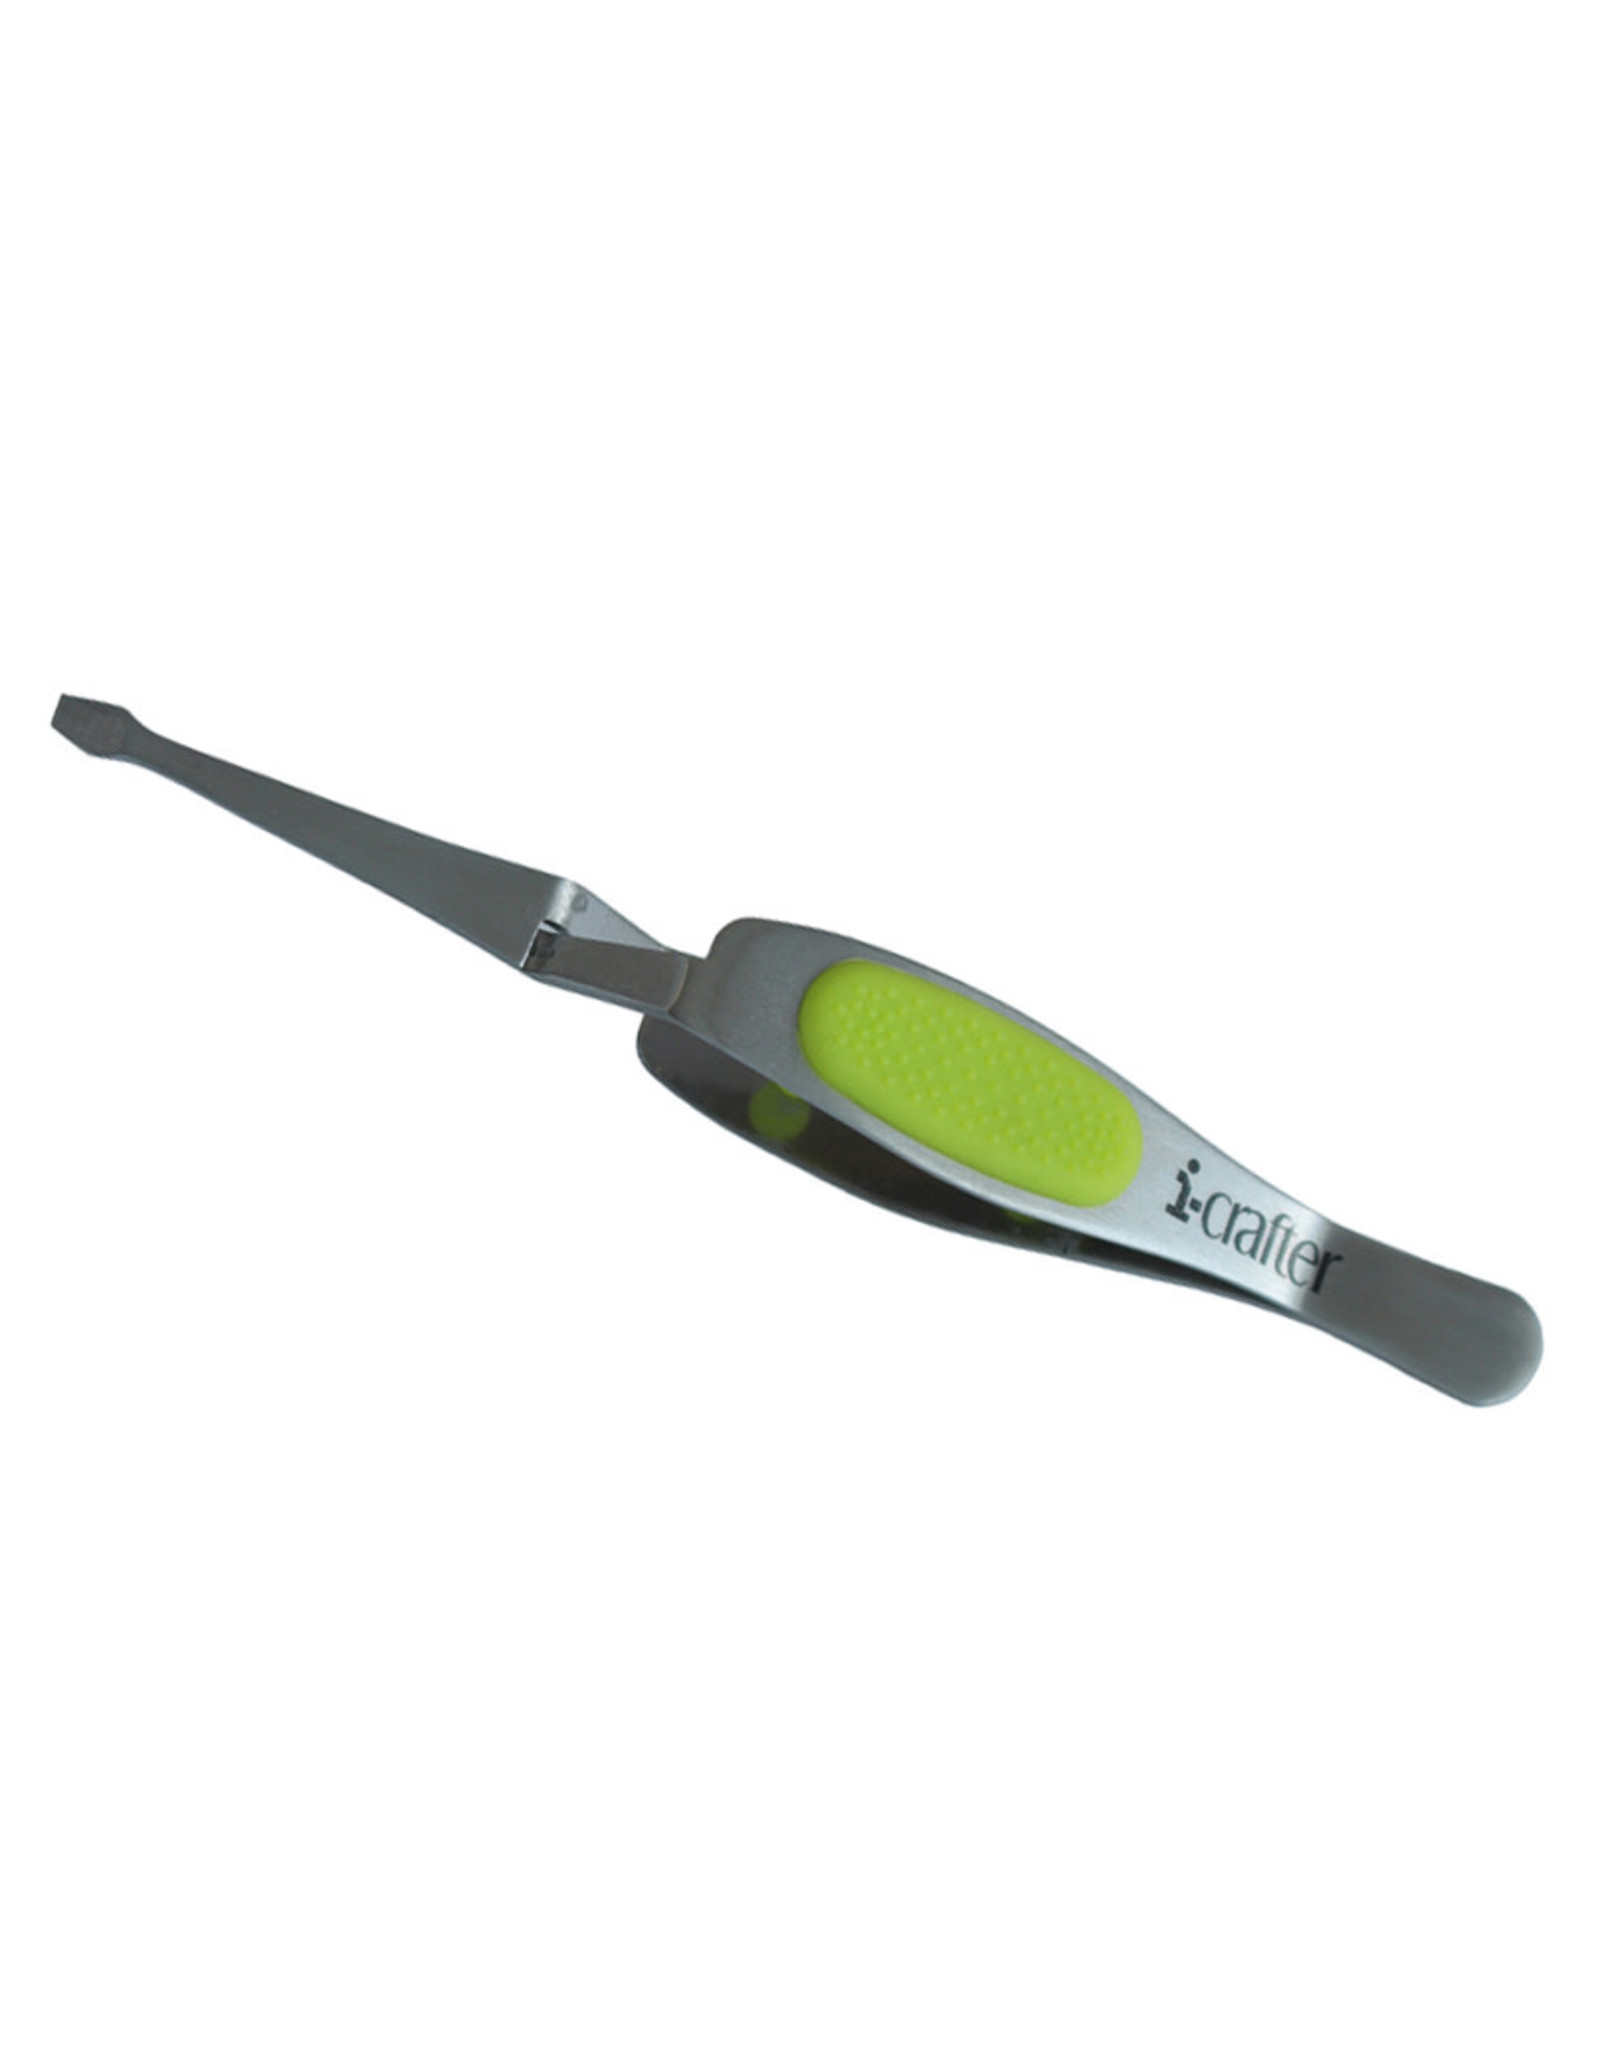 i-grip tweezers: 1 Flat Tip, Reverse Tweezer